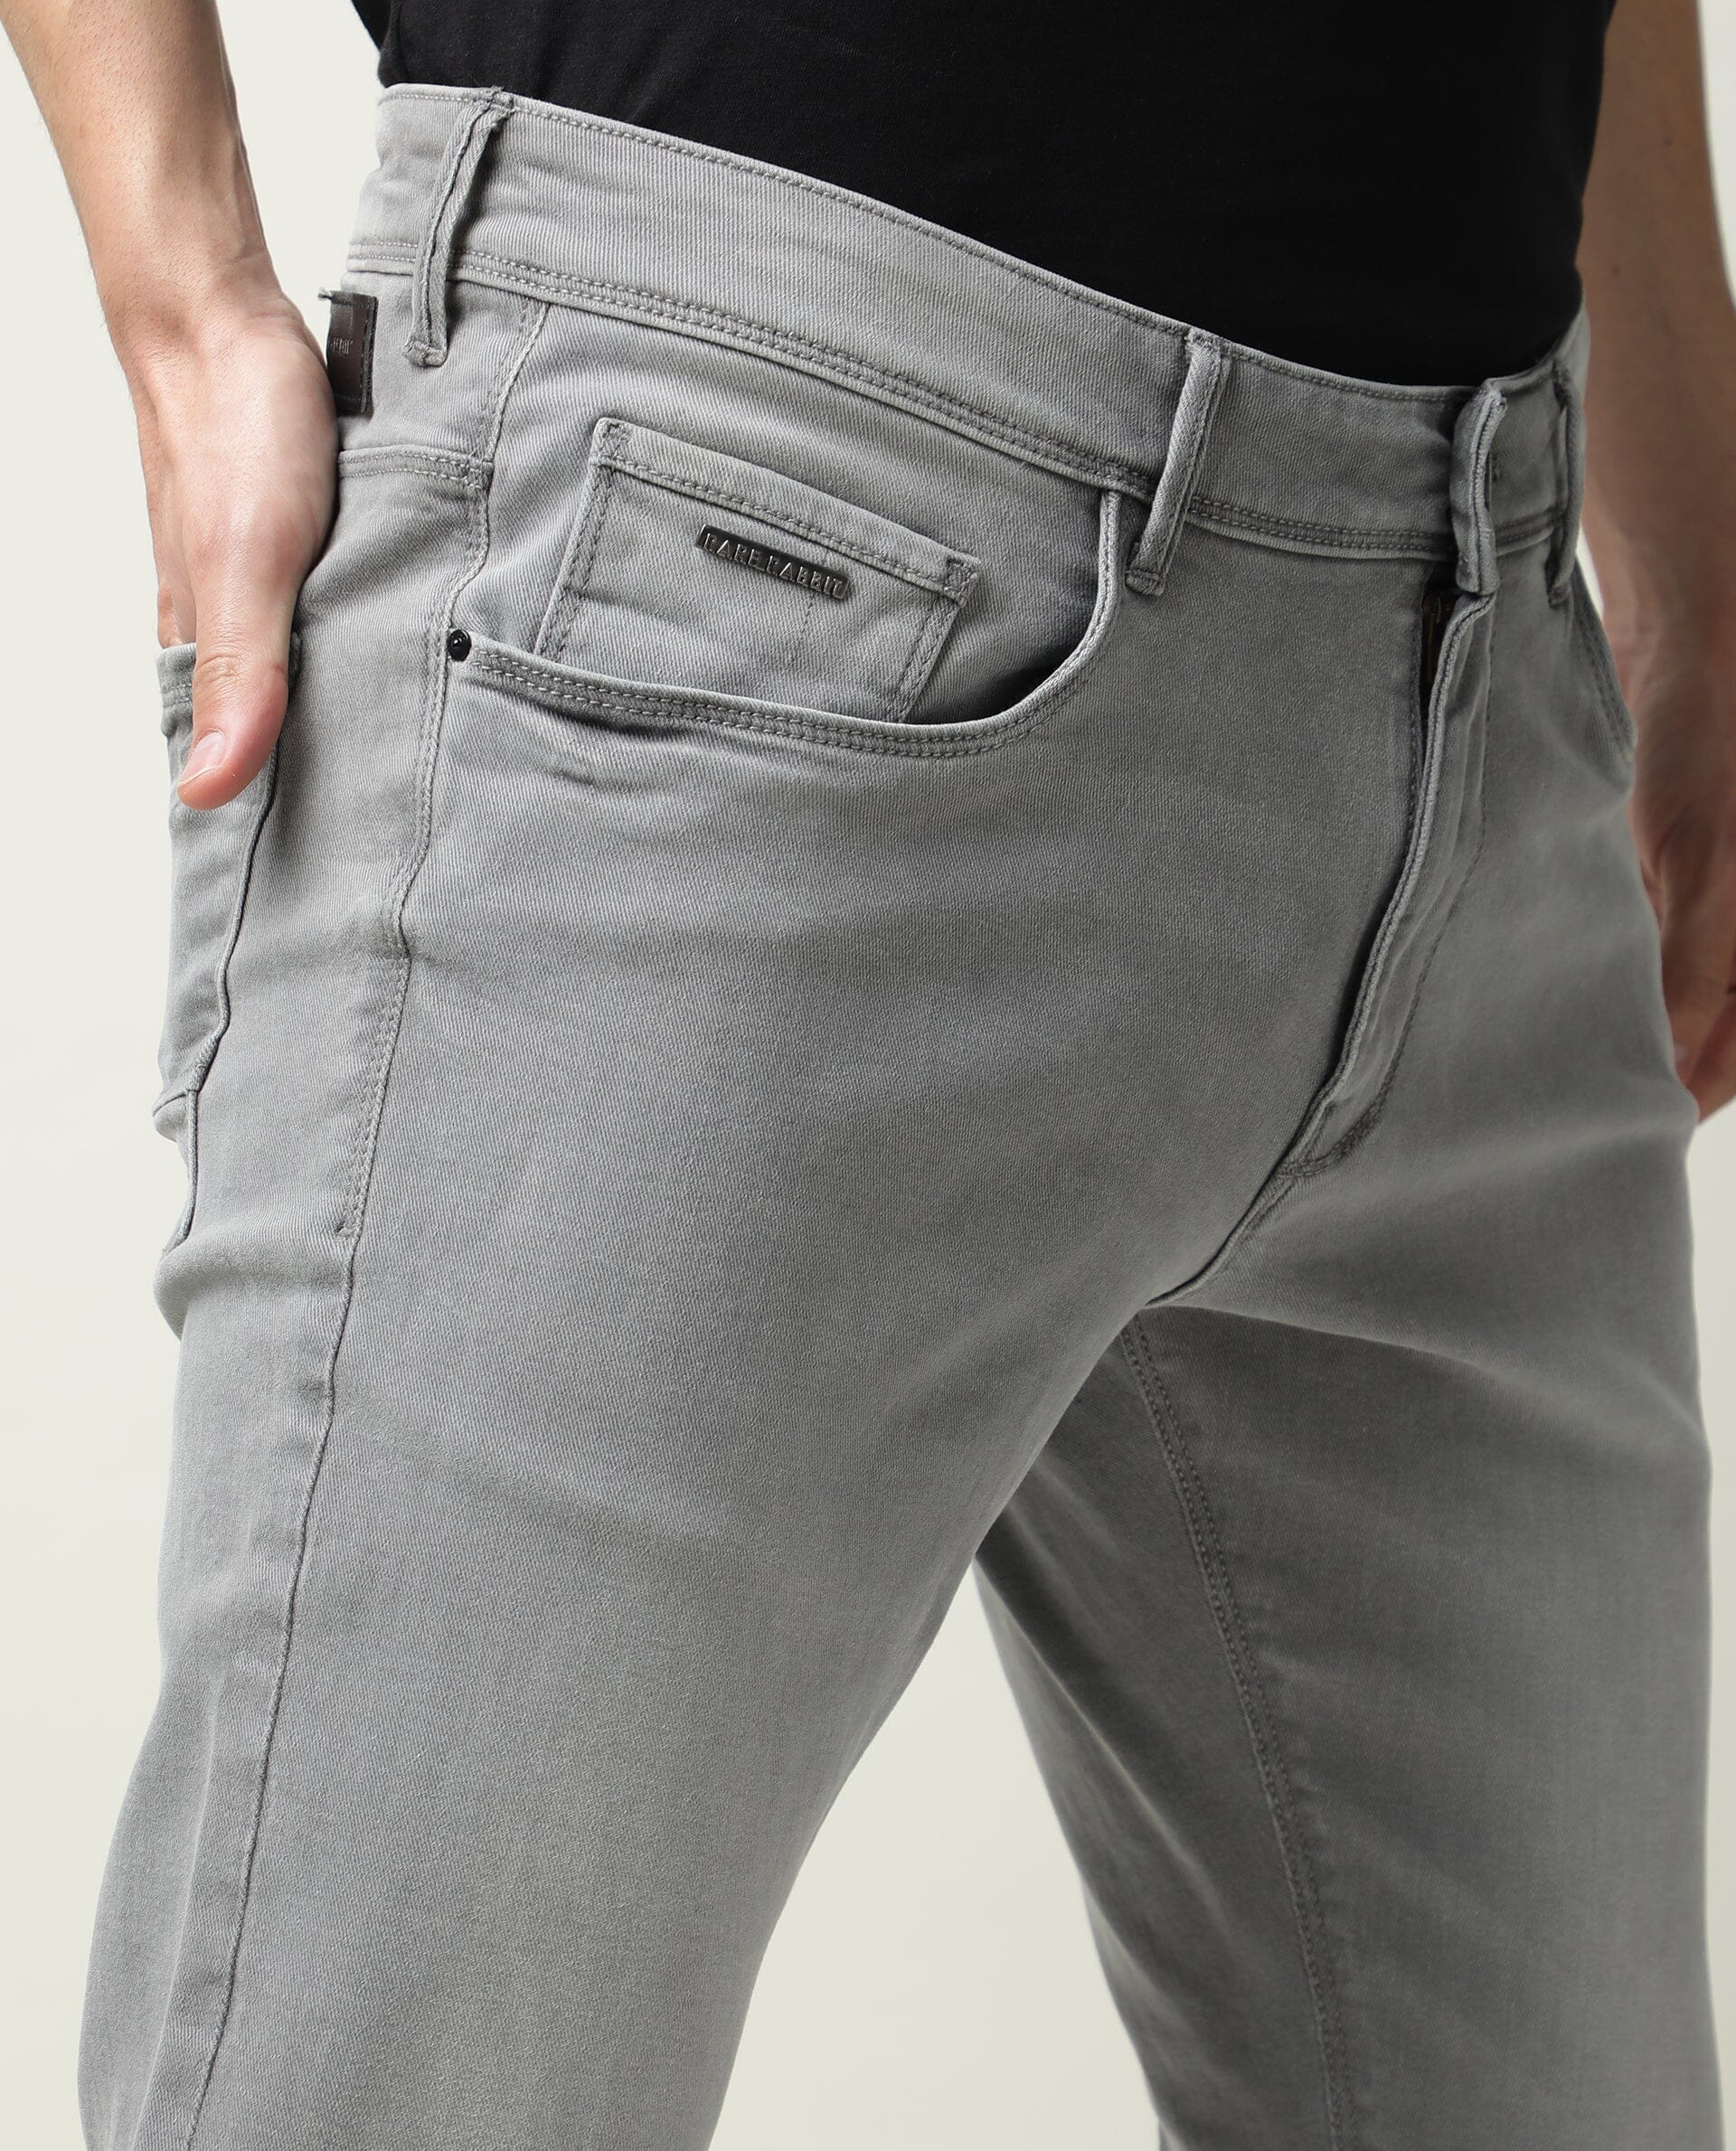 Buy Authentic Bare Denim Jeans Online In India | Tata CLiQ Luxury